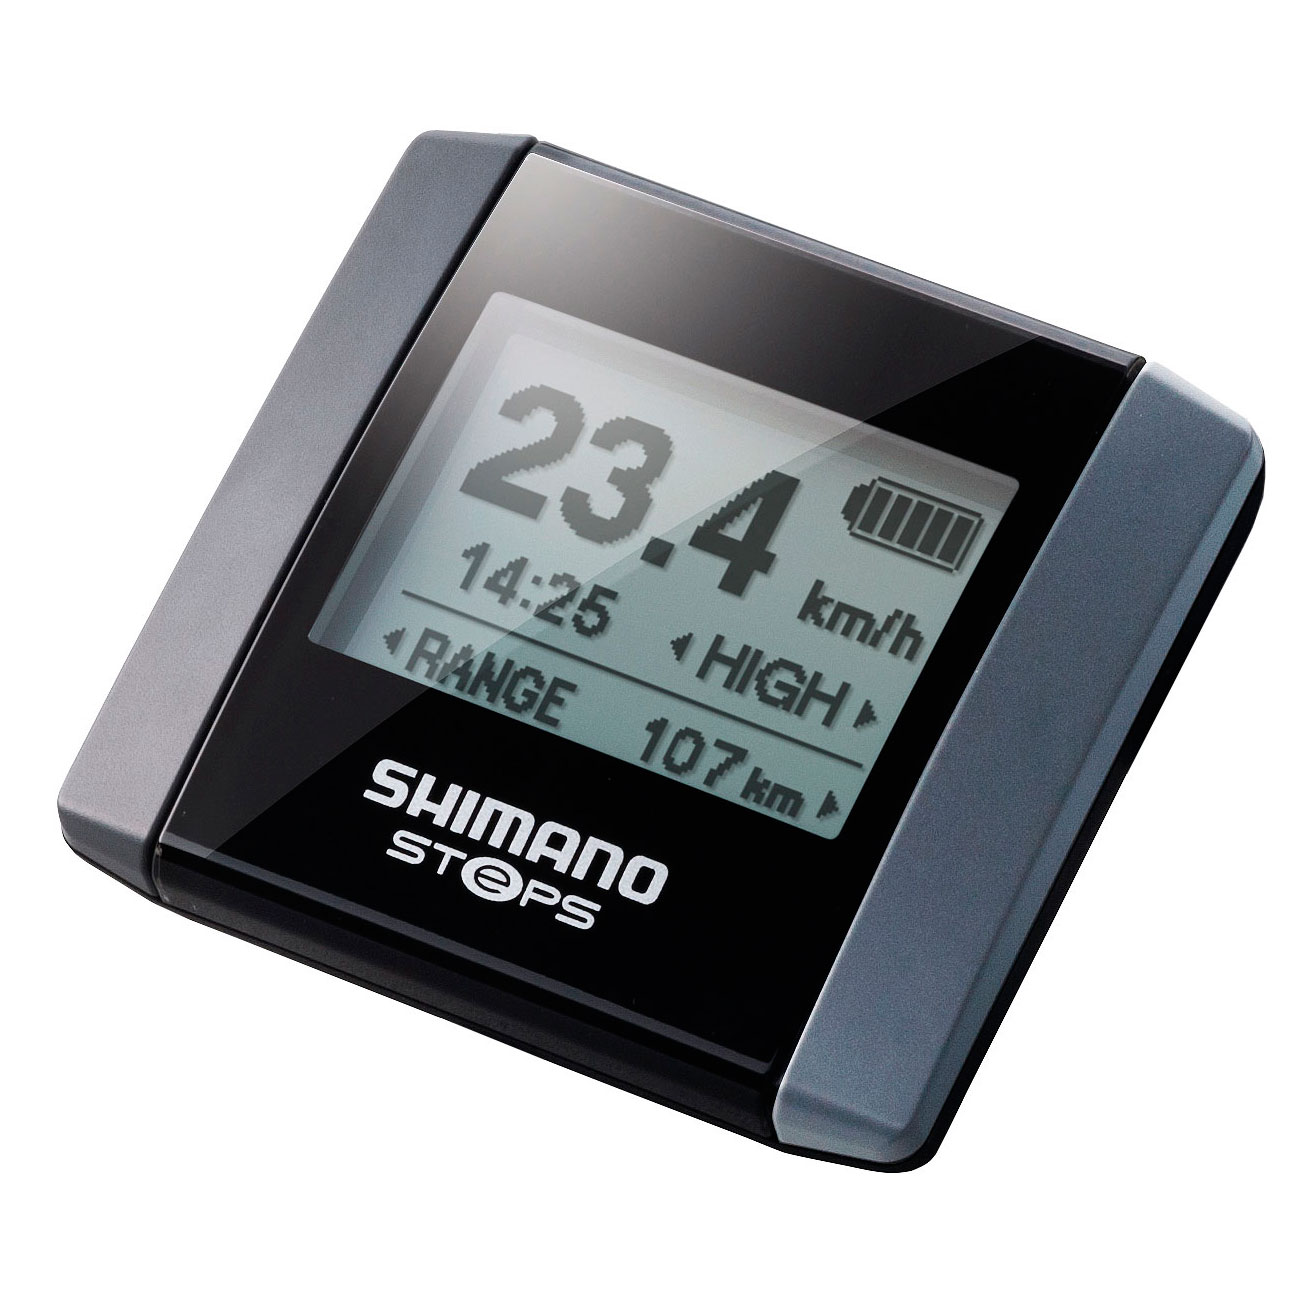 Produktbild von Shimano STePS SC-E6000 Display ohne Halterung - schwarz/silber